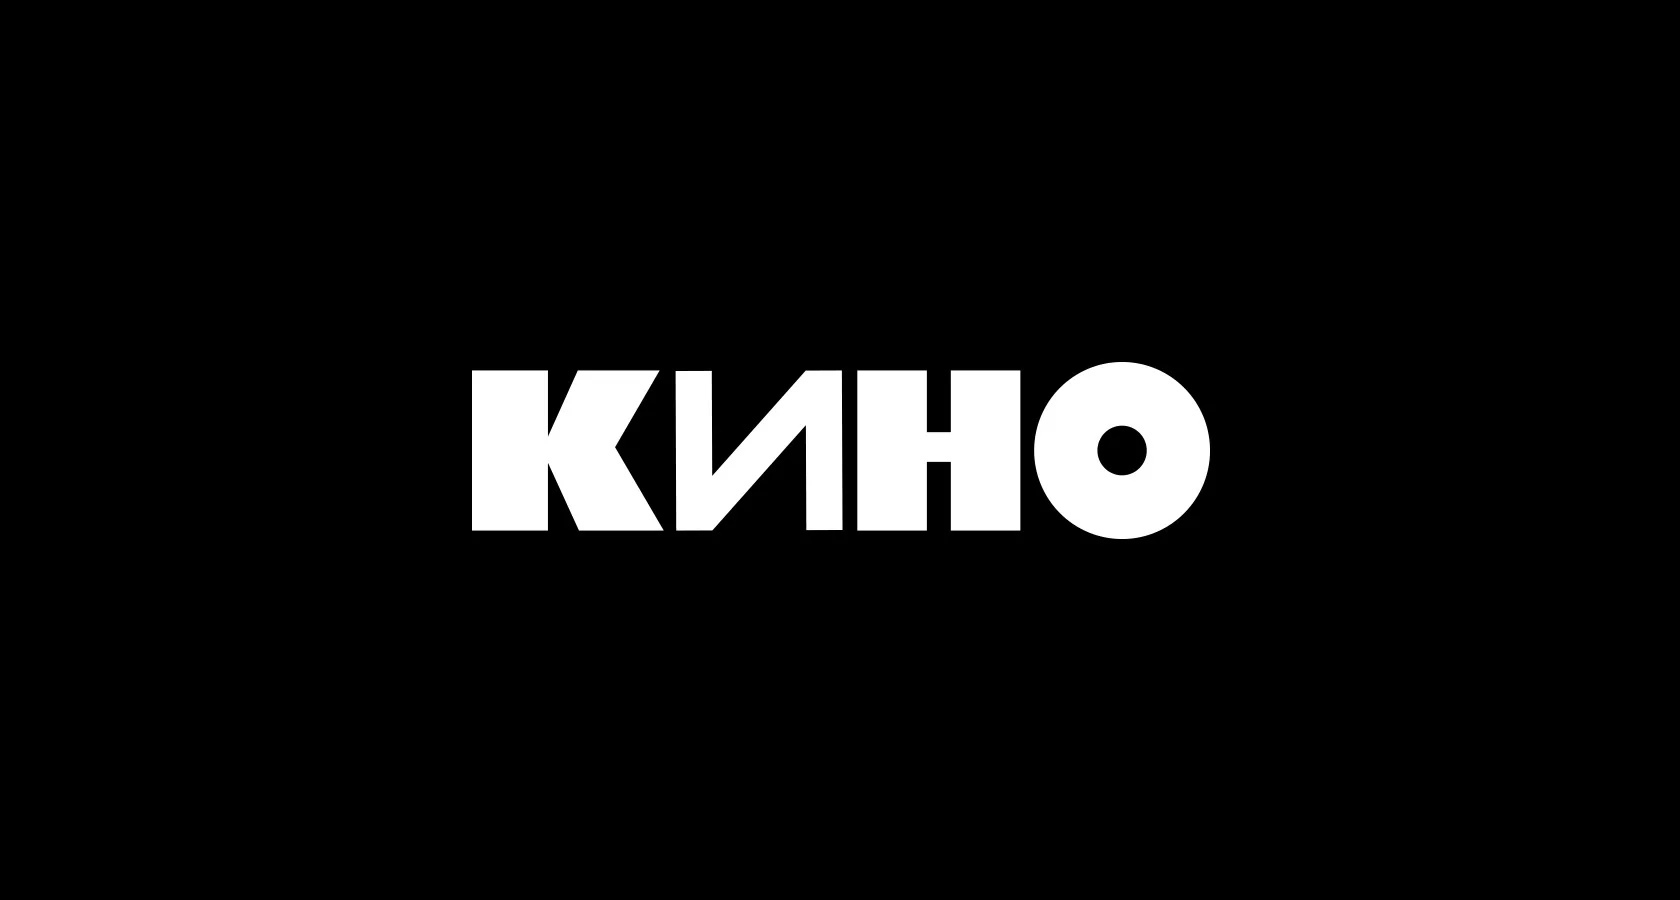 El logotipo del grupo Kino